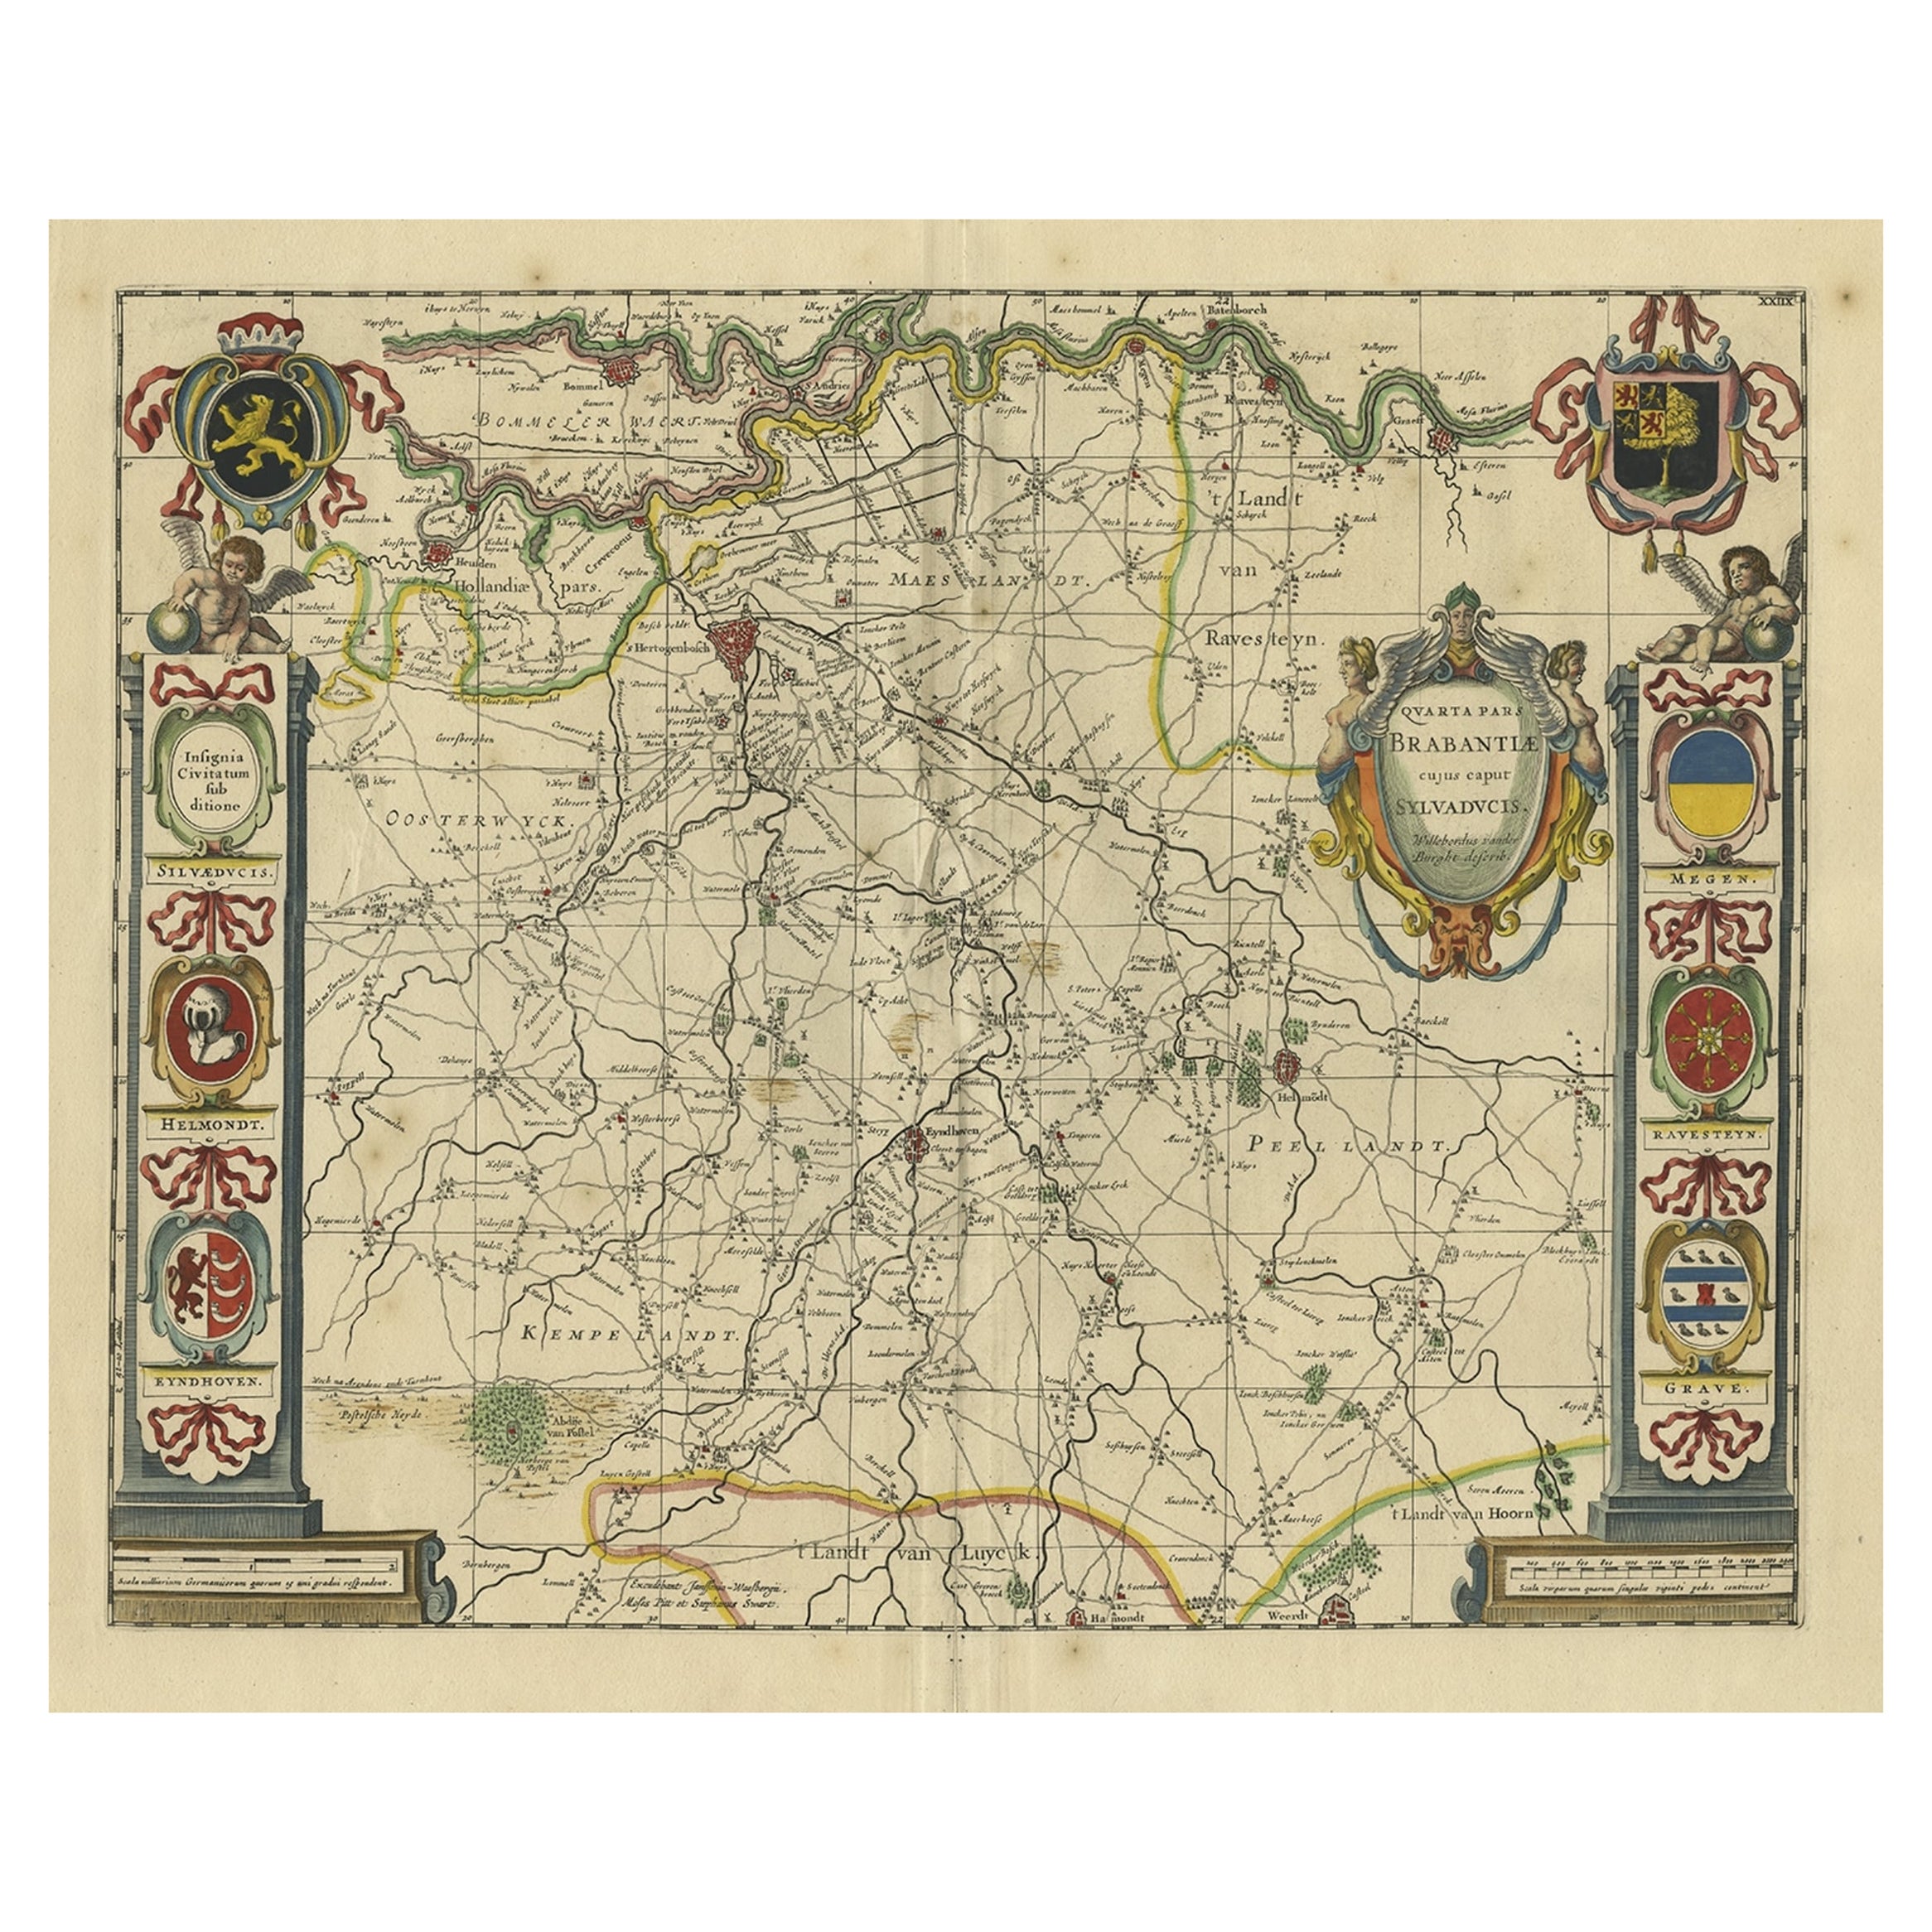 Dekorative antike Karte der niederländischen Provinz Noord-Brabant, ca. 1640